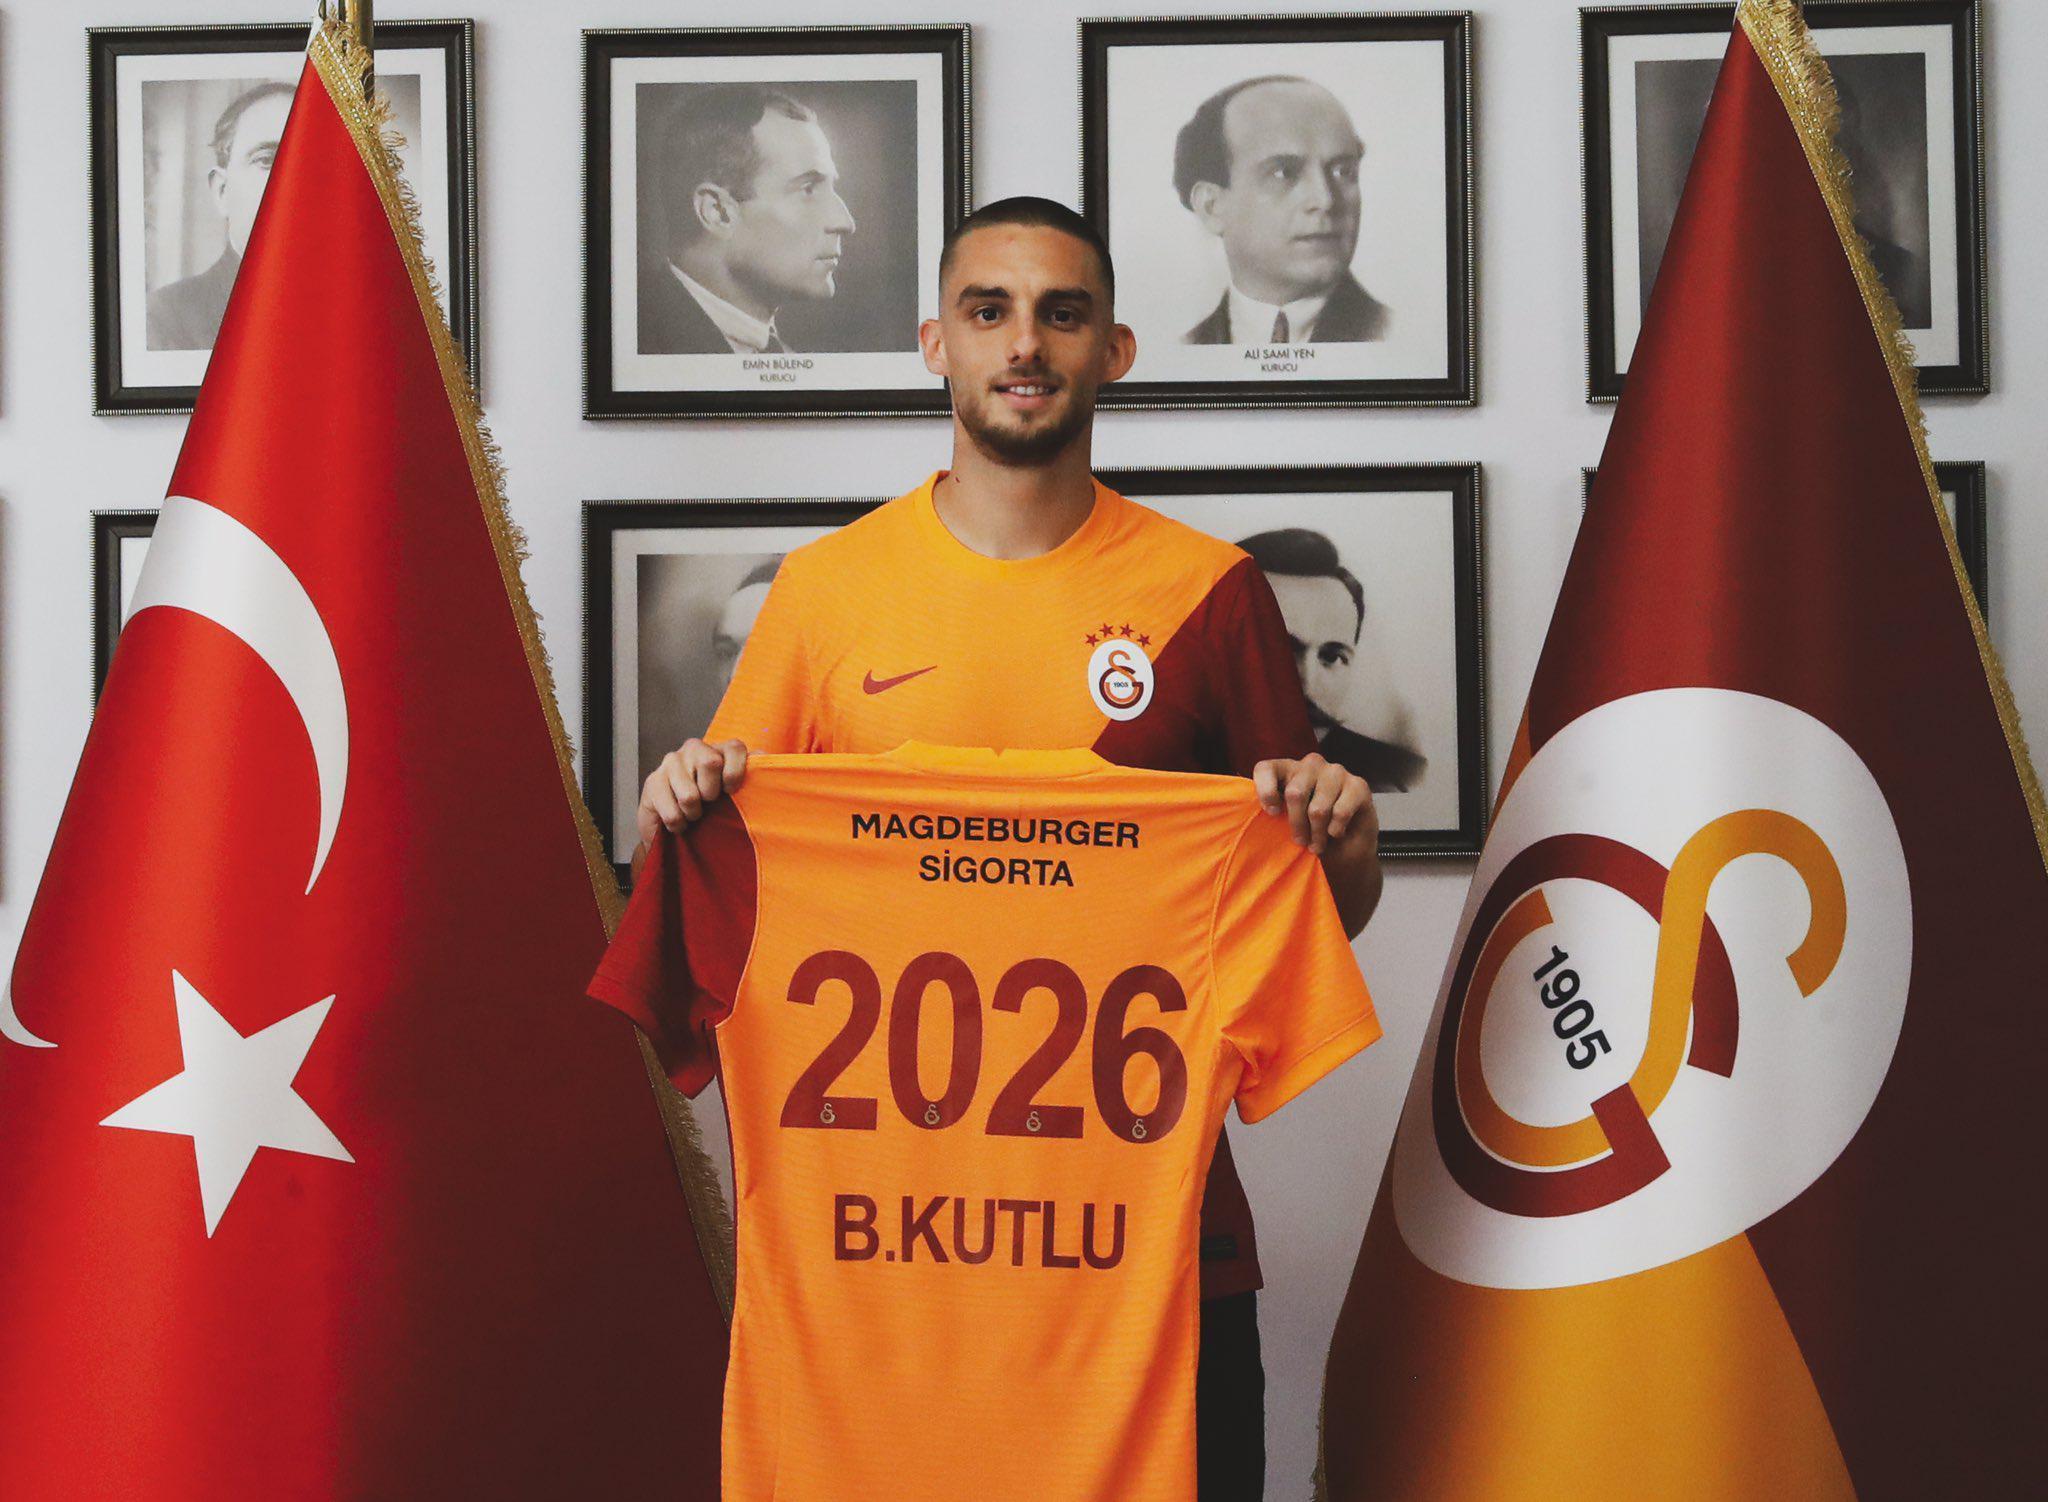 Son dakika Galatasaray haberi: Galatasaray, Berkan Kutlu transferini resmen açıkladı